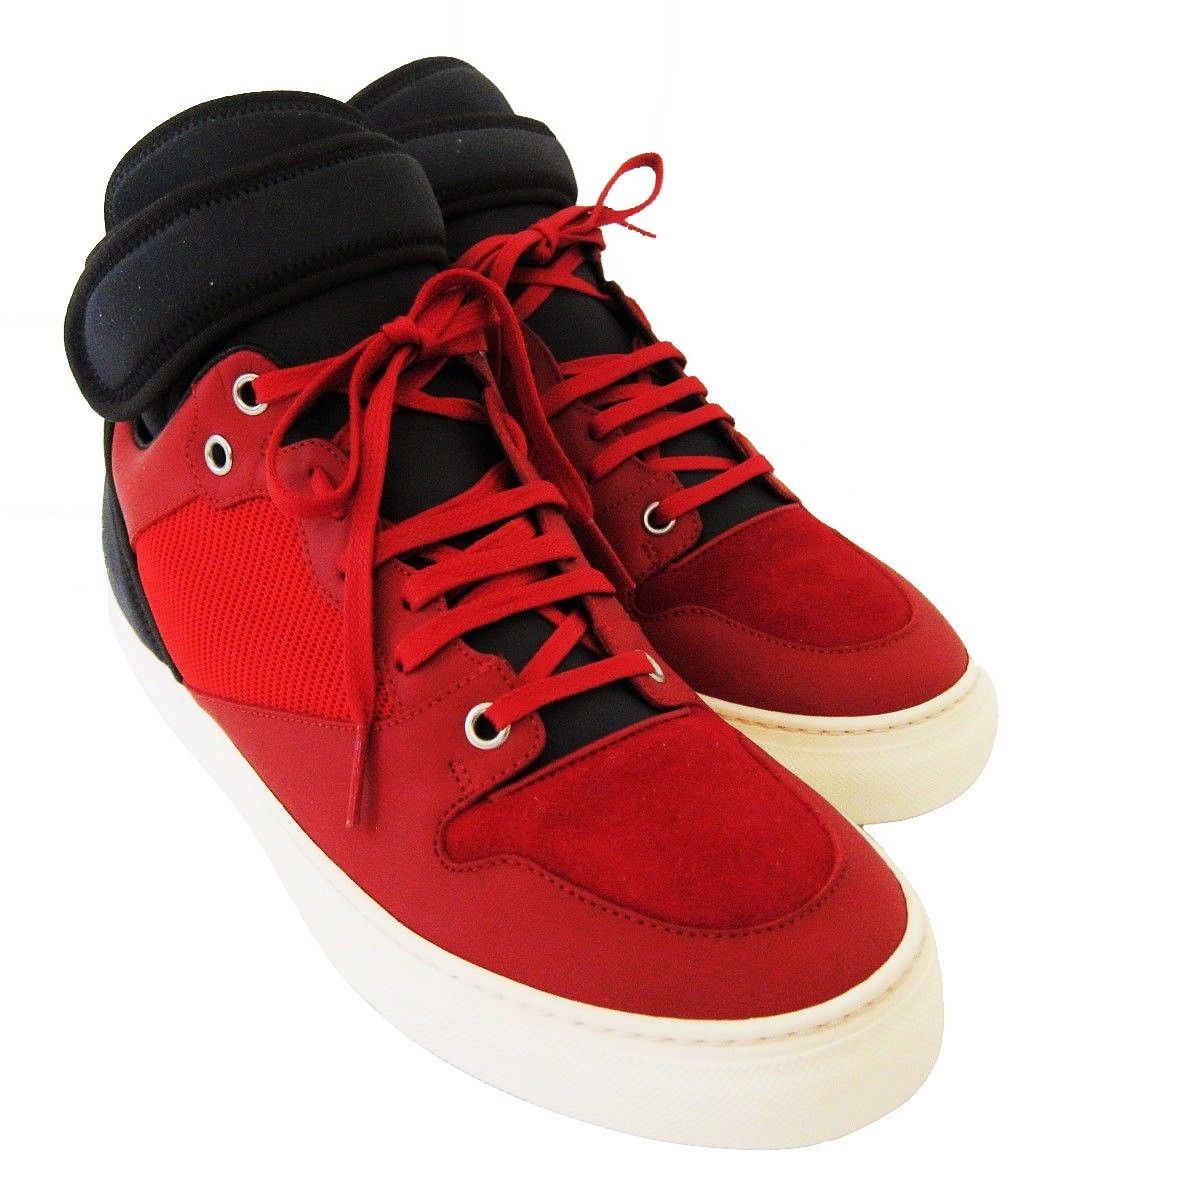 S-2162114 Nuevo Balenciaga Rojo/Negro Altas Zapatillas Zapato Talla Us ...